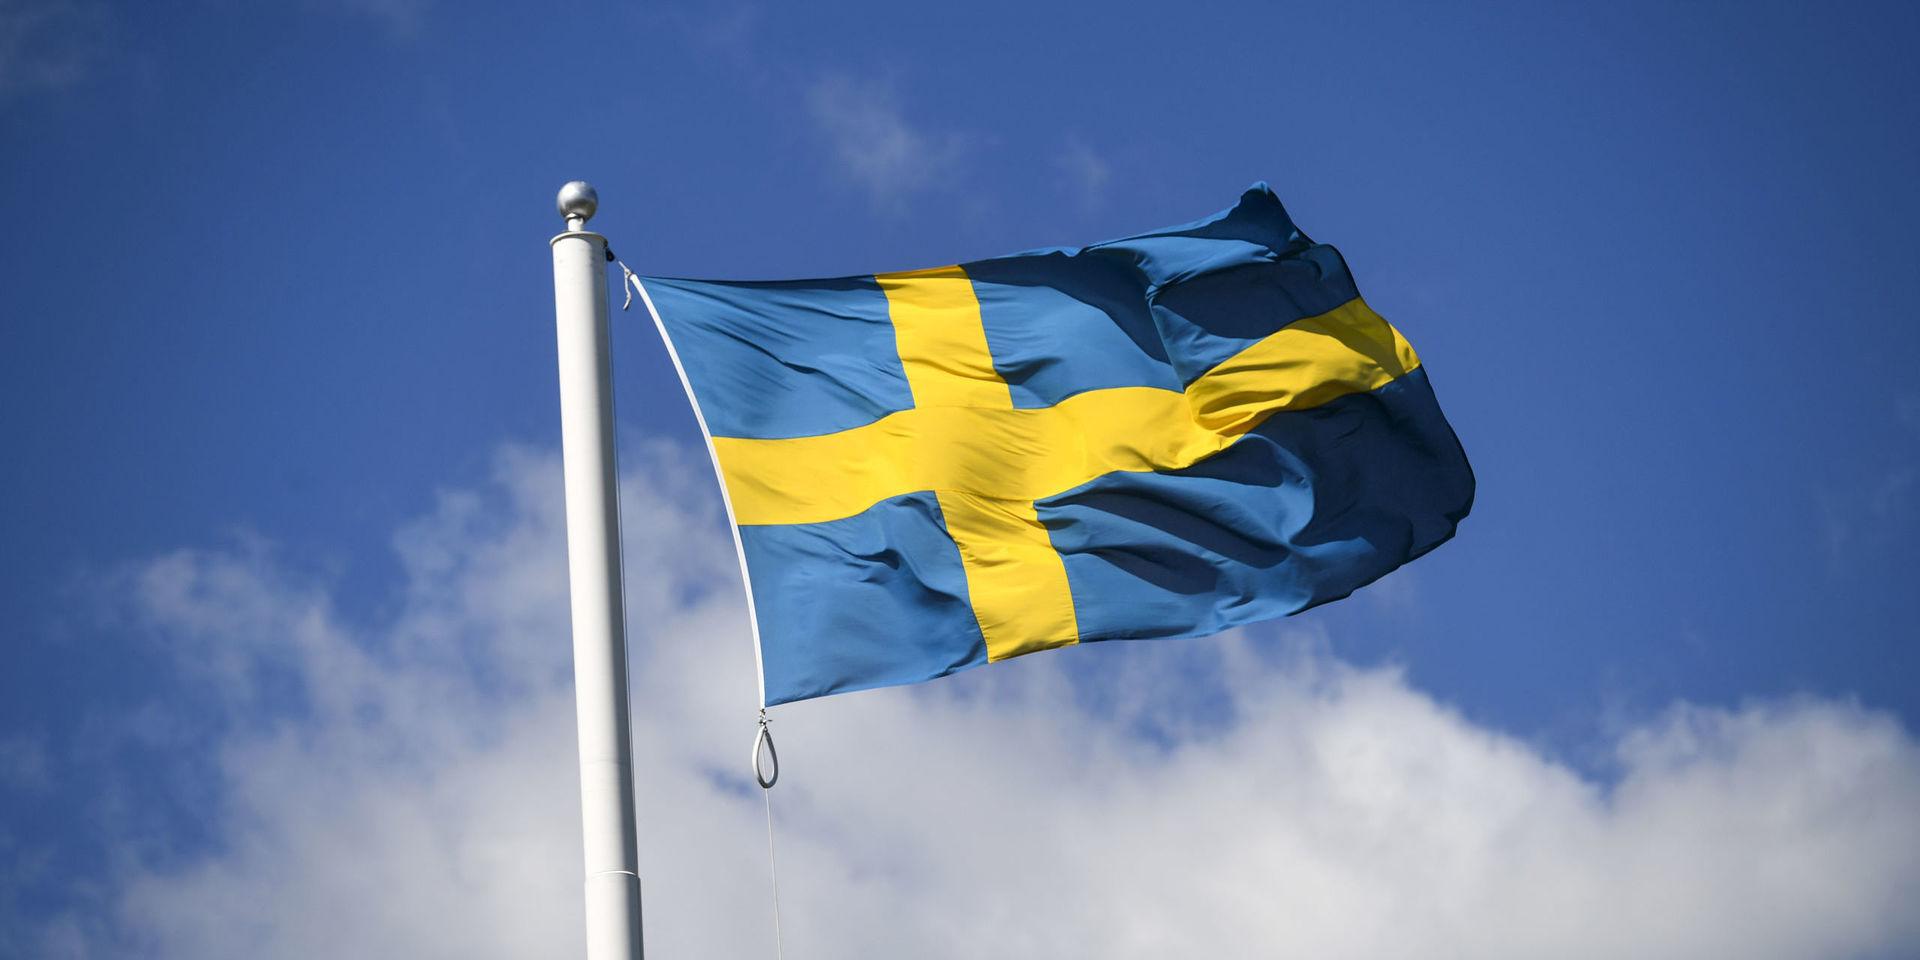 Ni borde veta att Sverige redan har den absolut lägsta tillväxten av samtliga Europas länder 2018 enligt en uppdaterad prognos i oktober 2018 från internationella valutafonden IMF, skriver skribenten i sin insändare. 